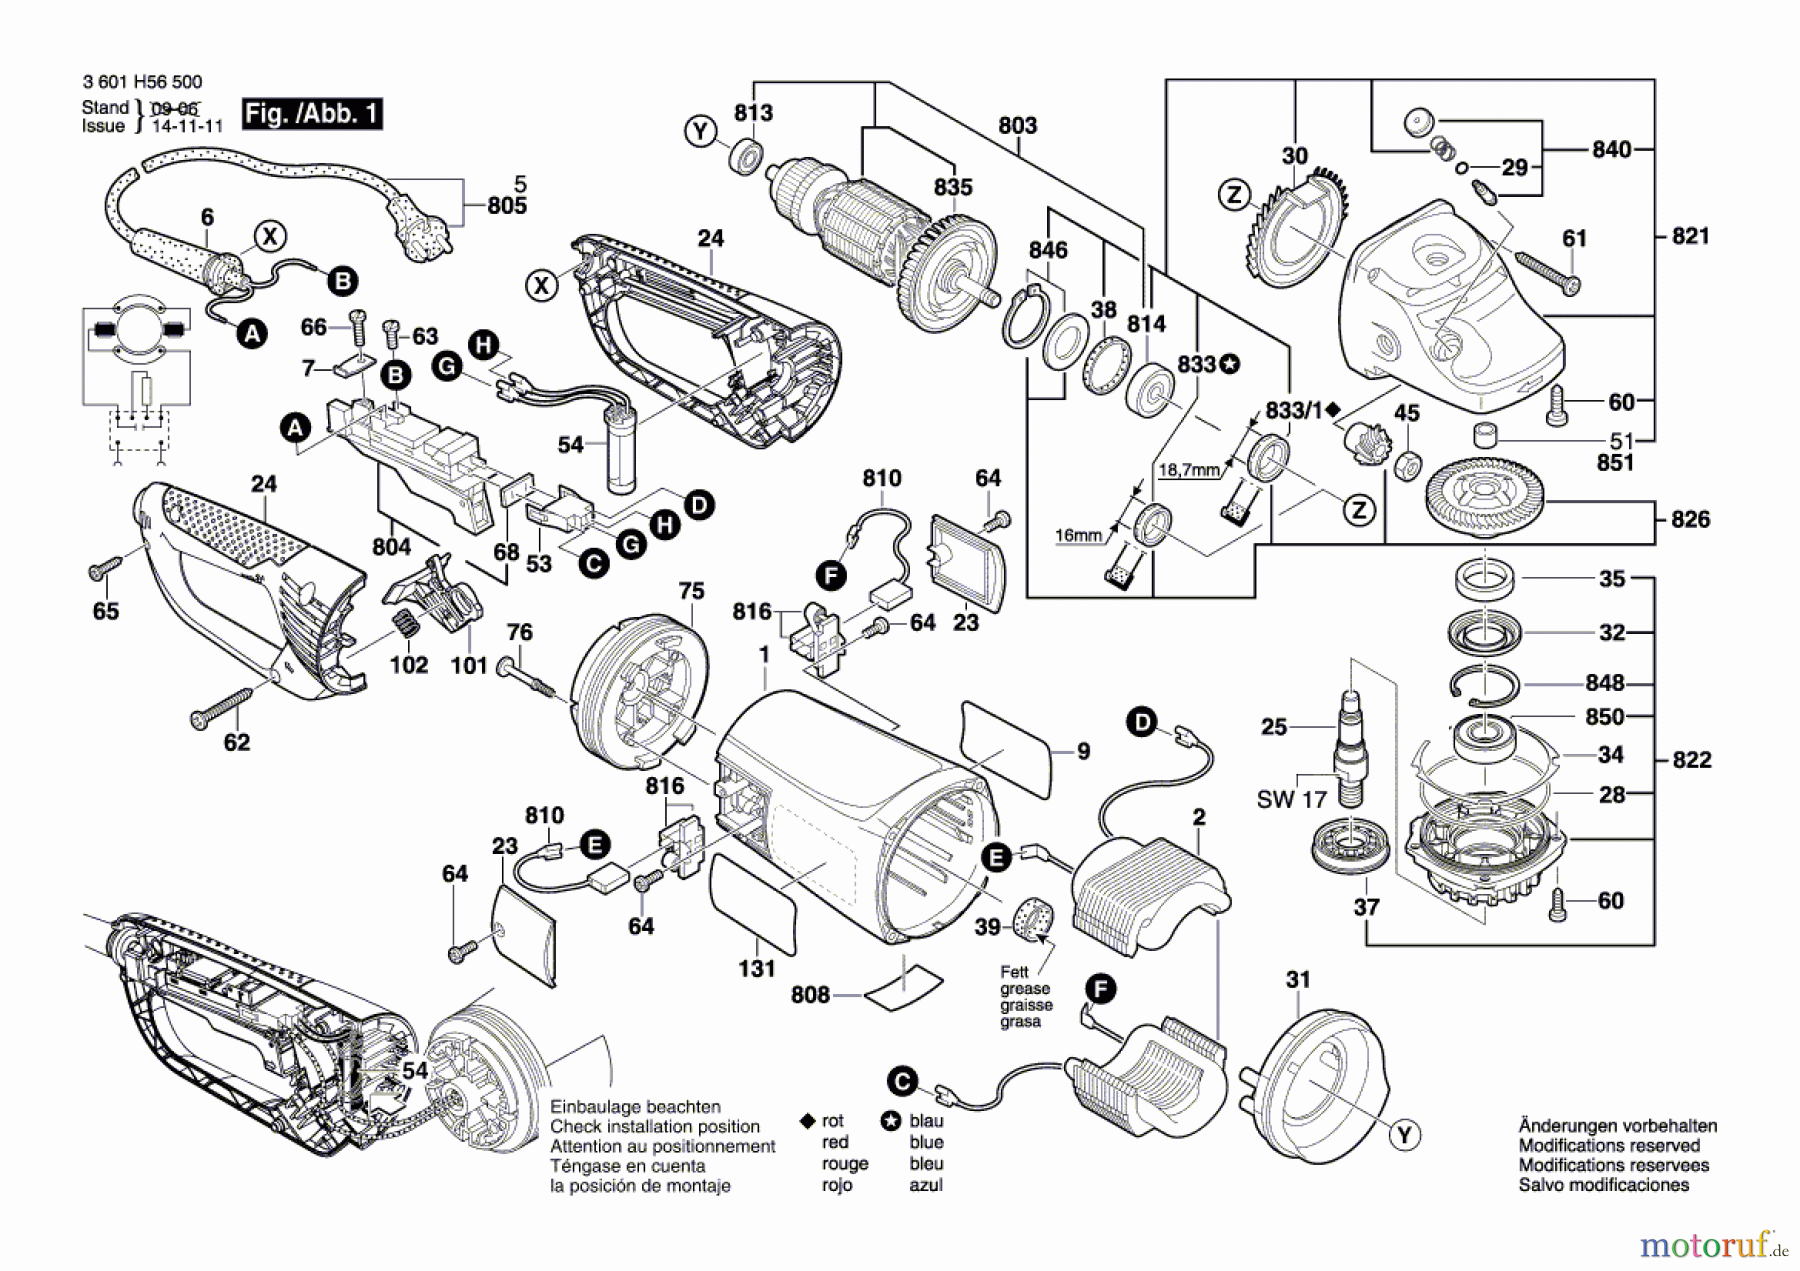  Bosch Werkzeug Winkelschleifer GWS 26-230 JBV Seite 1